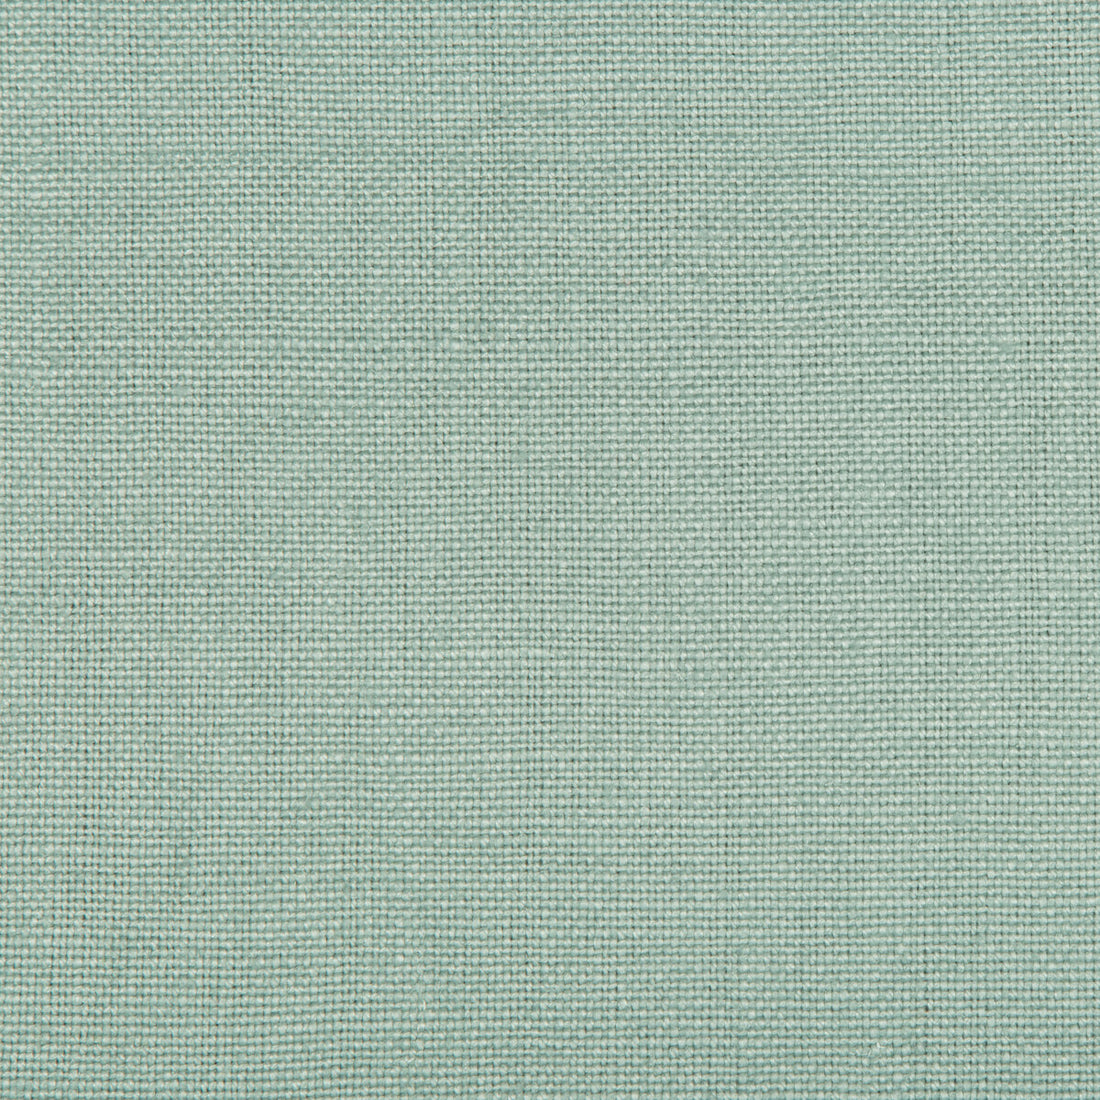 Kravet Basics fabric in 35342-135 color - pattern 35342.135.0 - by Kravet Basics